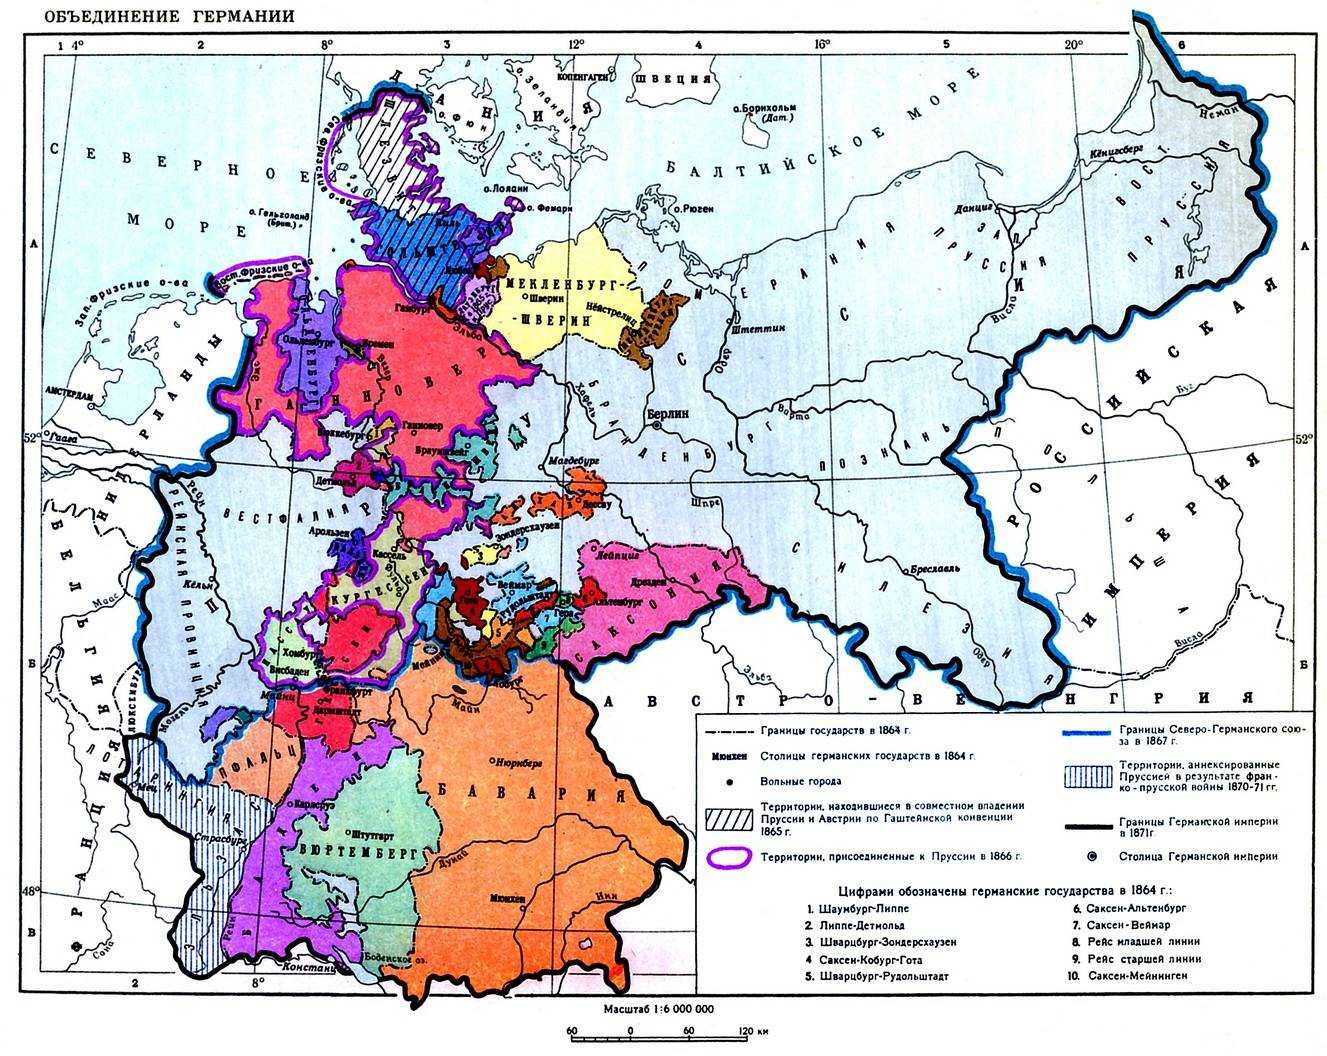 Пруссия какое государство. Германия в 19 веке карта до объединения. Карта Германии 19 века до объединения. Объединение Германии в 19 веке карта. Объединение Германии карта ФРГ.